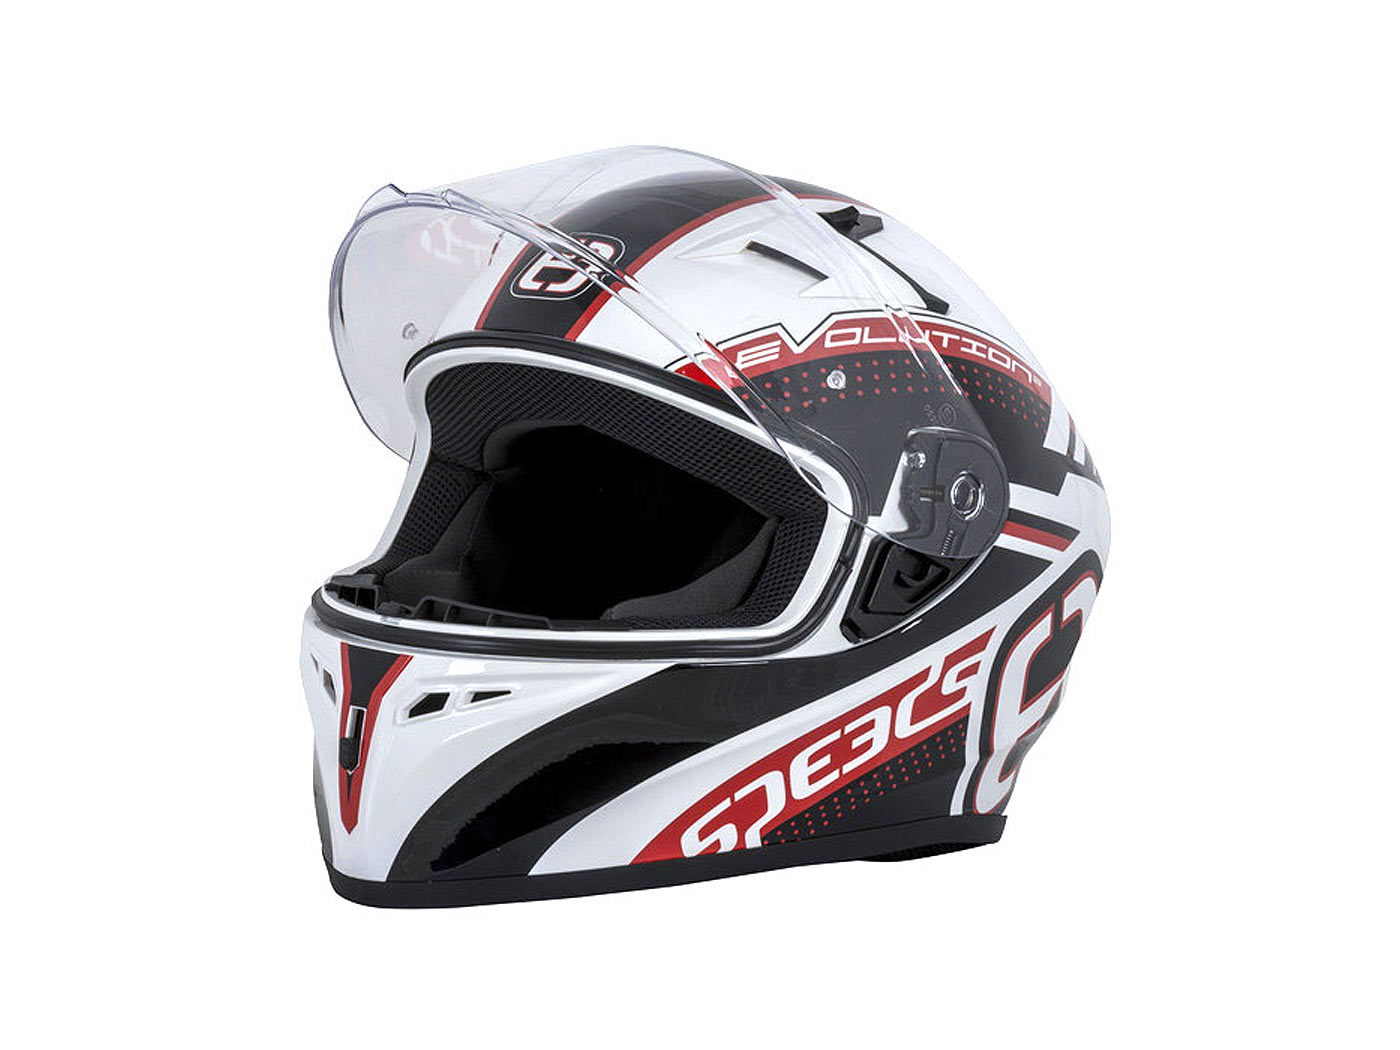 Helm Speeds Evo III weiß/schwarz/rot - Größe M